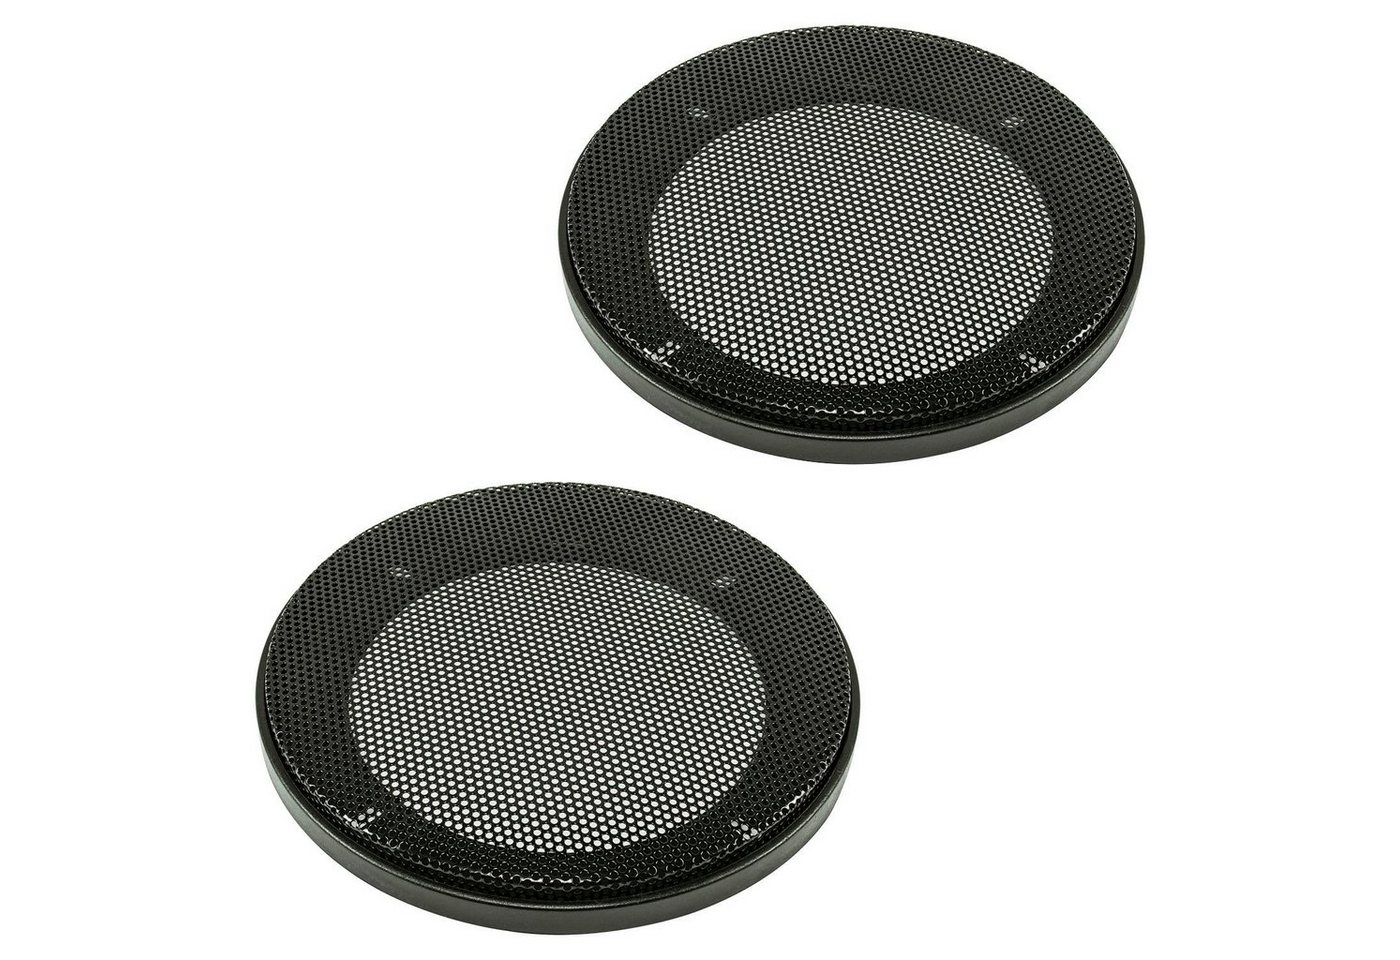 tomzz Audio Lautsprecher Gitter Grill für 100mm DIN Lautsprecher schwarz 2-teilig Auto-Lautsprecher von Tomzz Audio